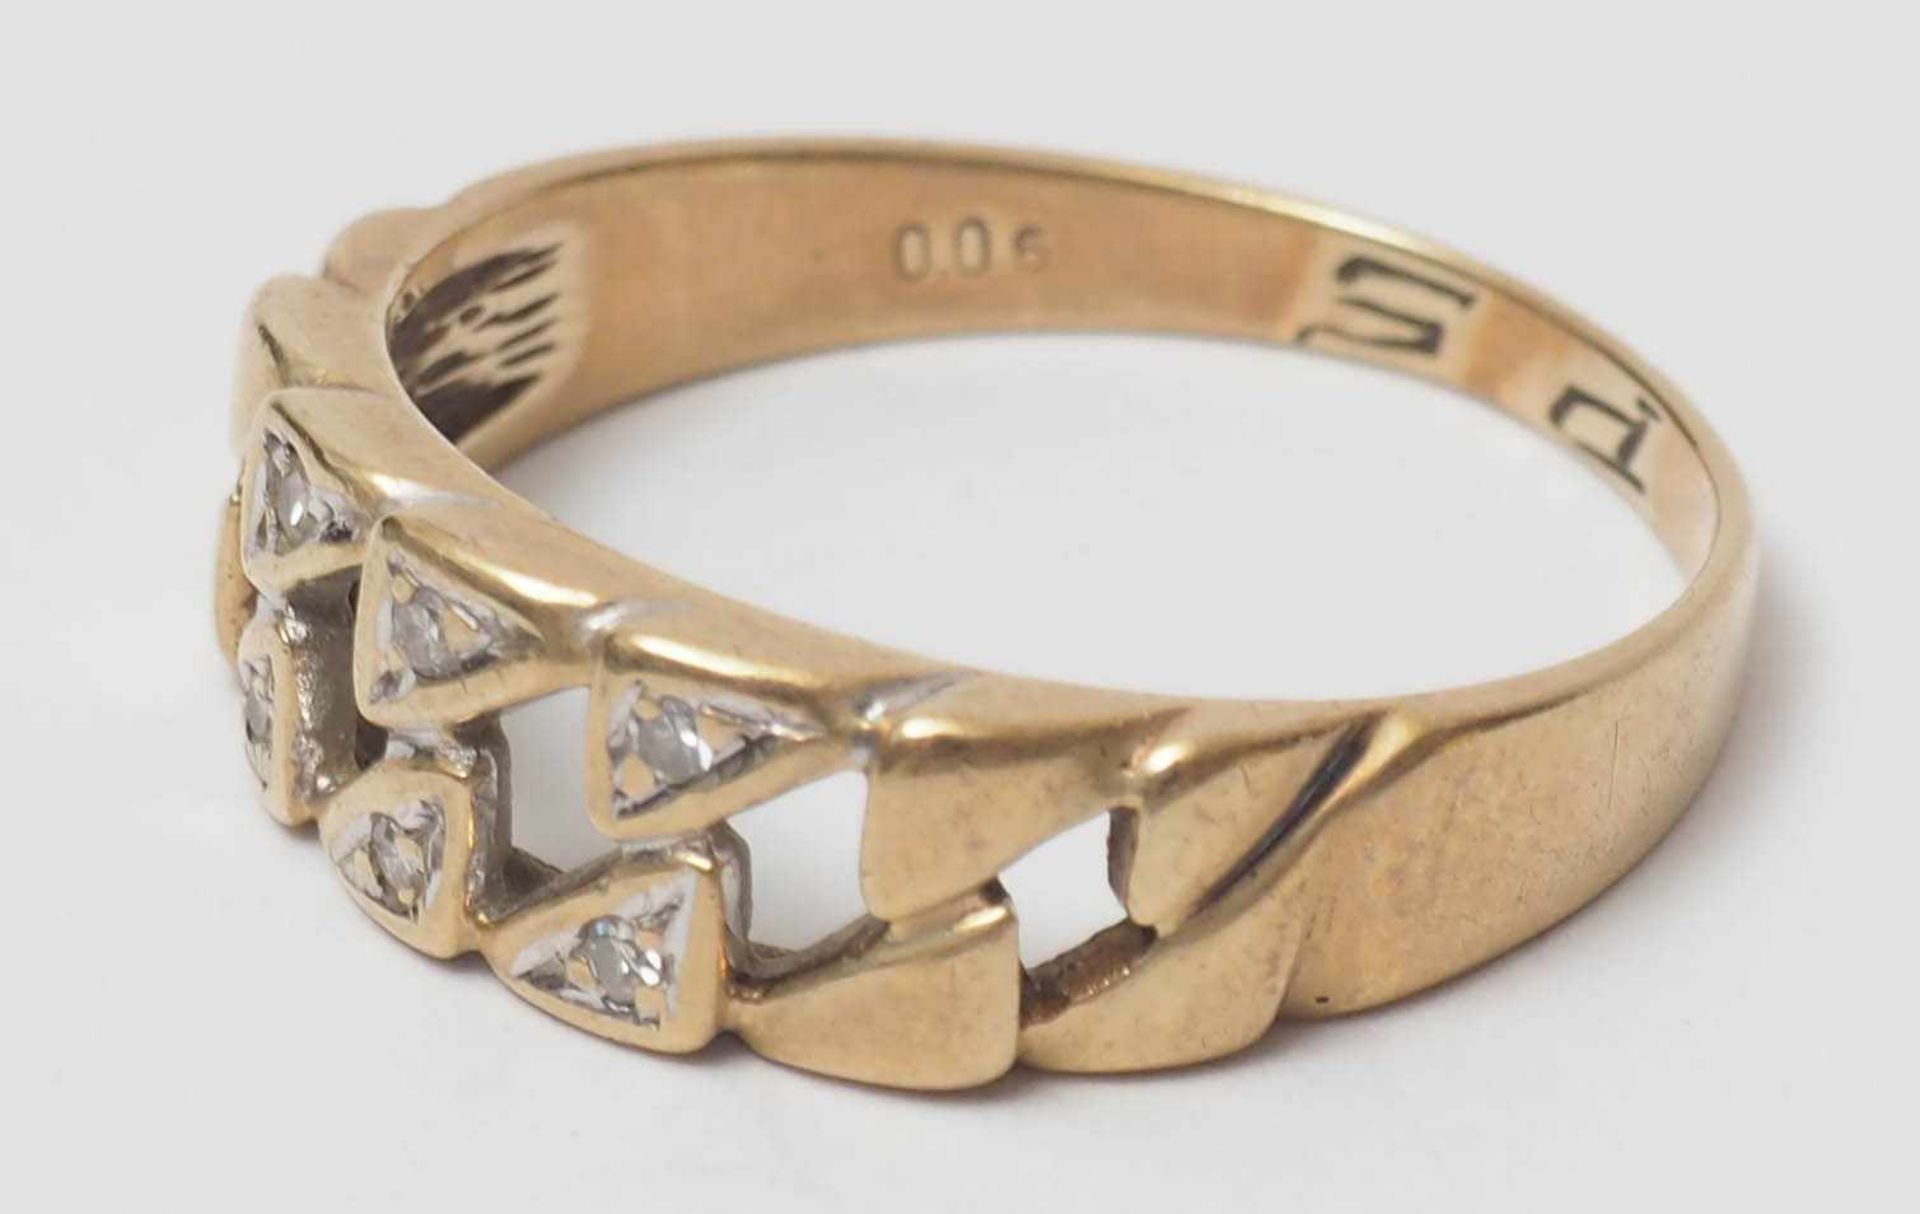 Damenring GG 14kt. Kettenförmiger Ringkopf mit Diamantsplittern. Ringweite 56, Gew. ca. 3g.